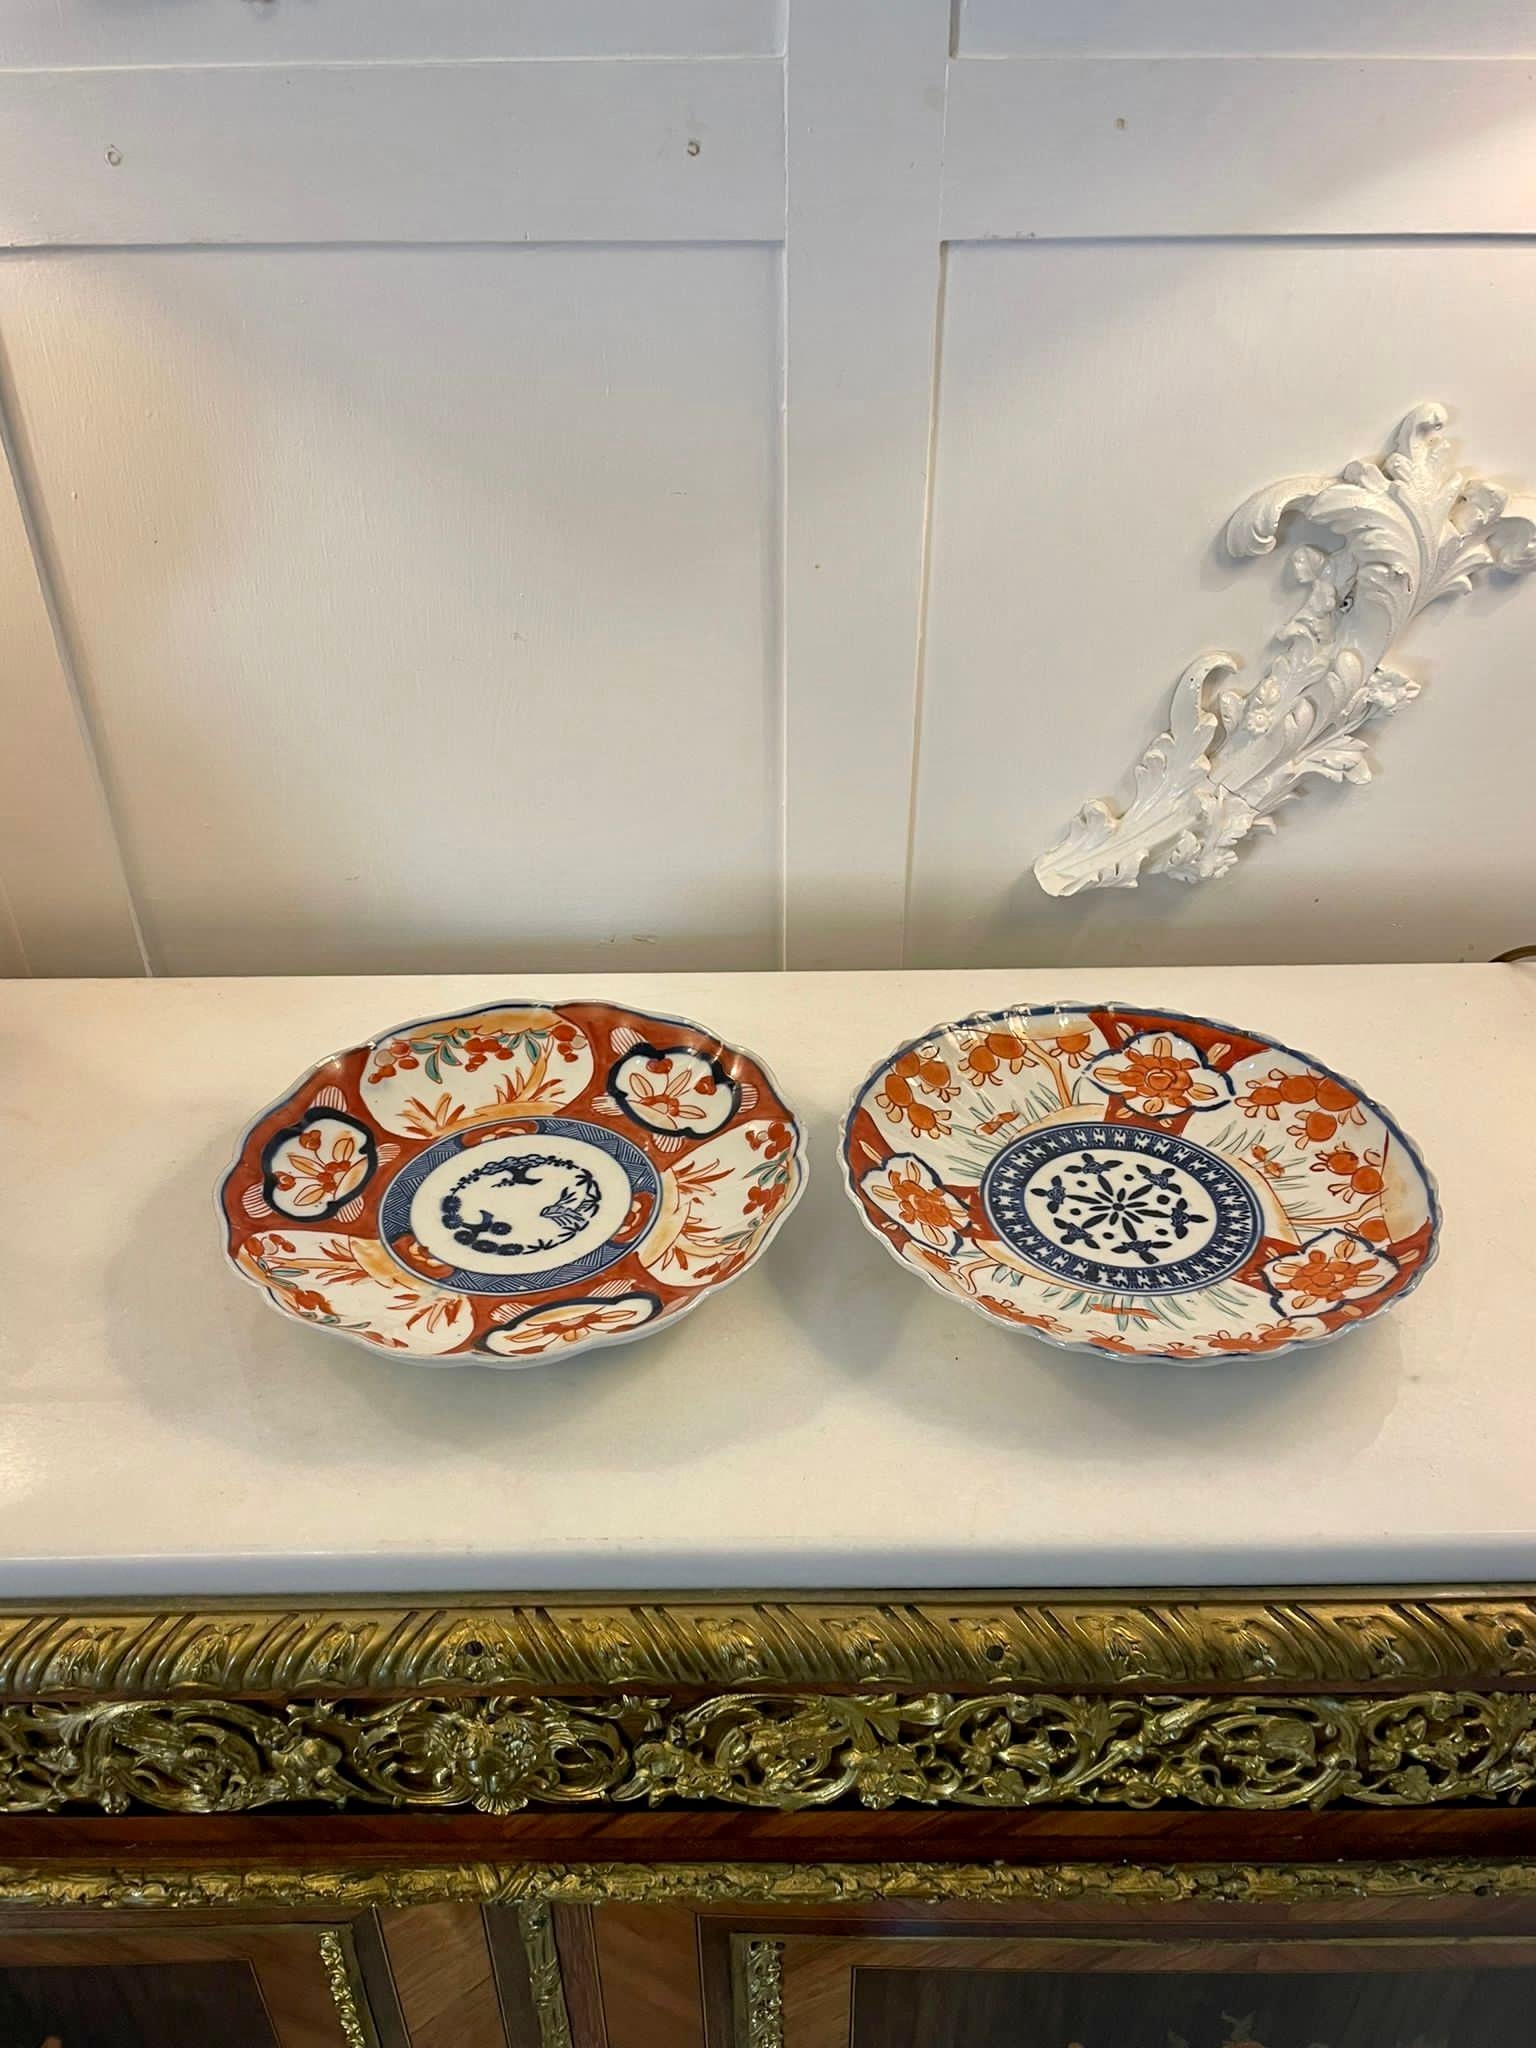 Deux assiettes japonaises anciennes Imari à bord festonné, ornées de magnifiques panneaux peints à la main en rouge, bleu, blanc et vert. 


De très beaux exemplaires en parfait état d'origine


Dimensions :
Hauteur 3,5 cm Largeur 22 cm x Profondeur